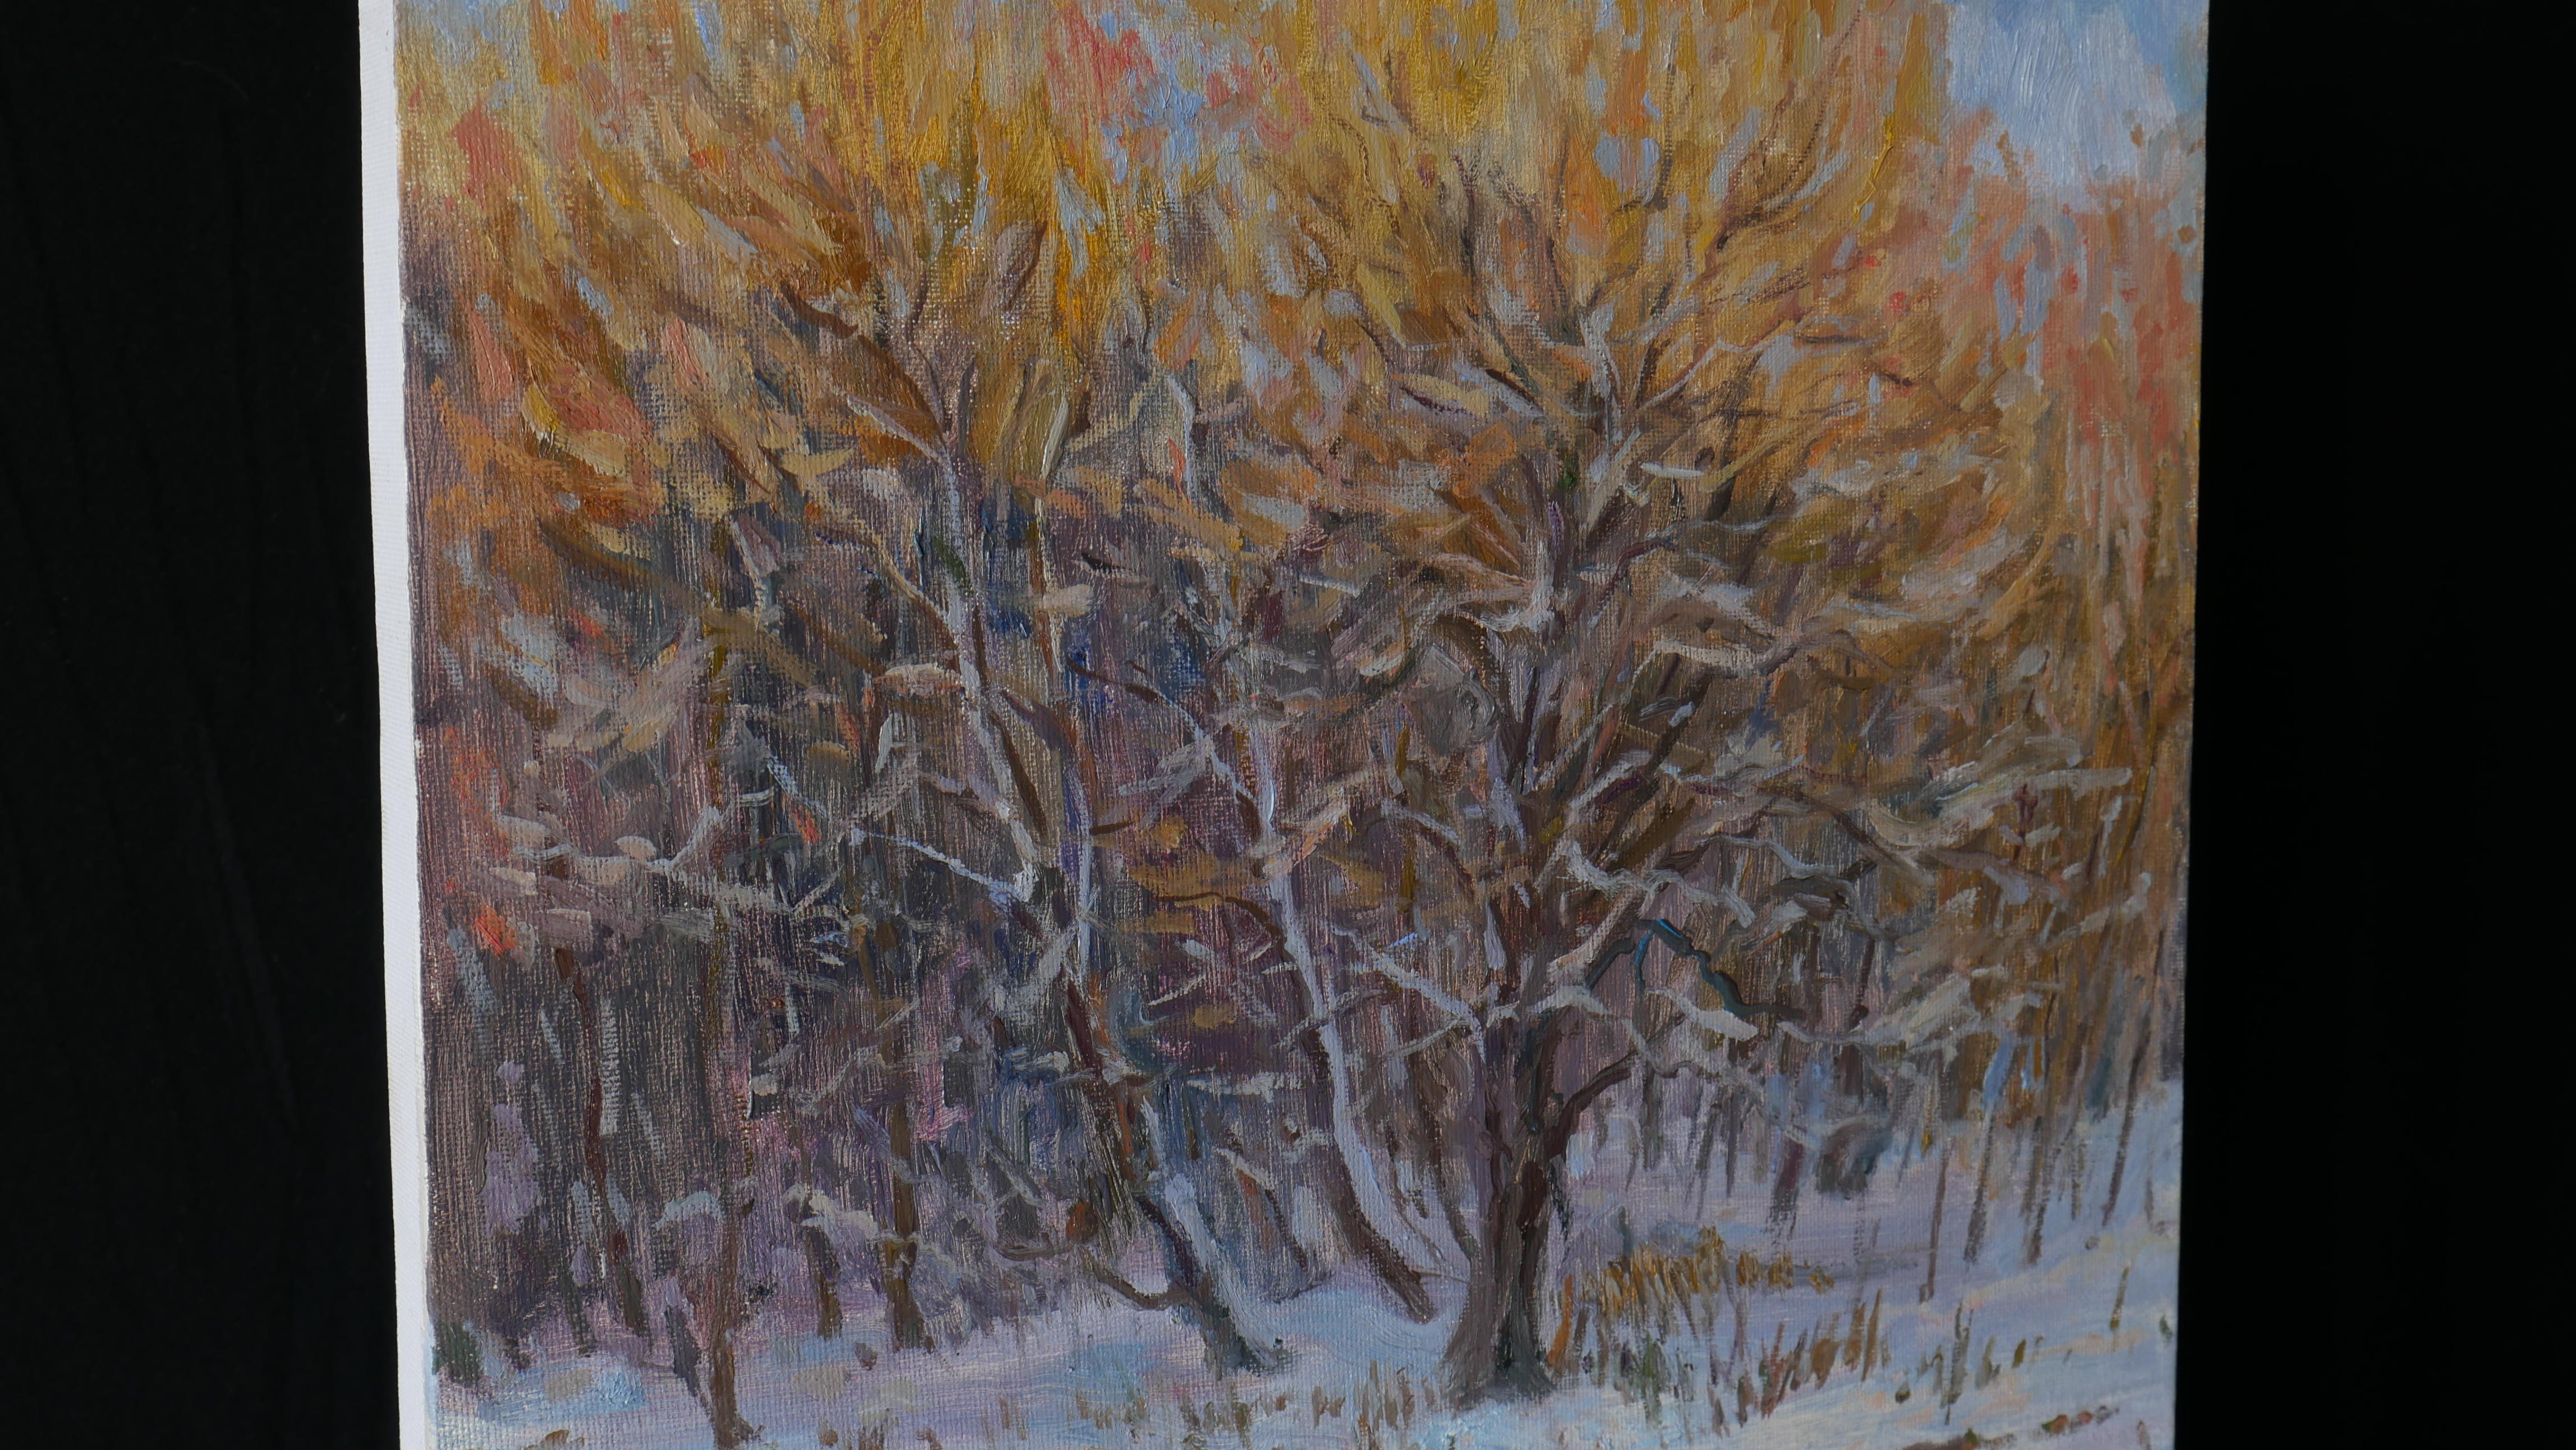 The Latest Touches Of The Winter Sun - Winter- Flusslandschaftsgemälde (Impressionismus), Painting, von Nikolay Dmitriev